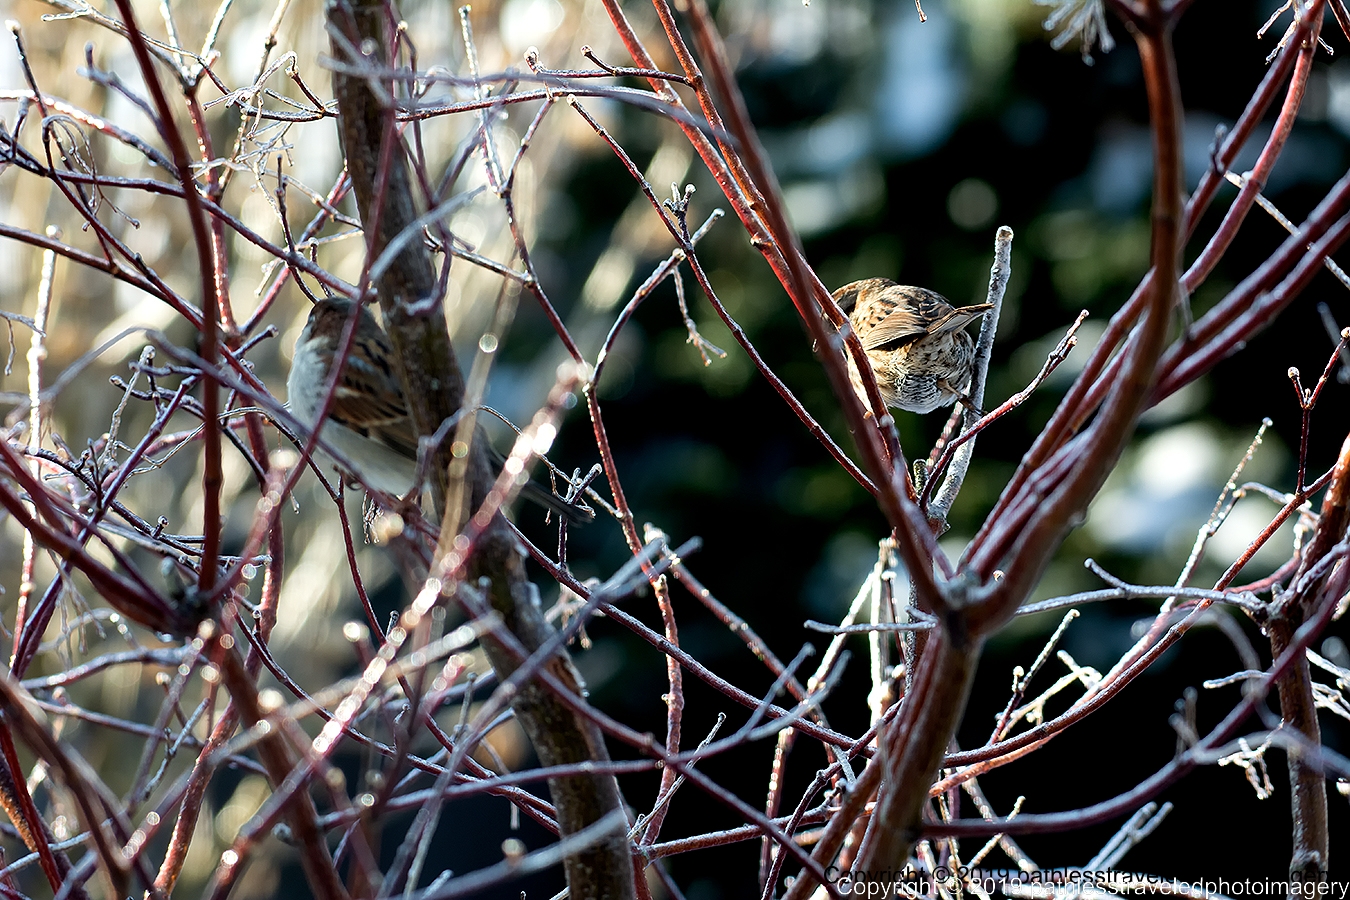 1902_0060a.jpg - A bird in the bush